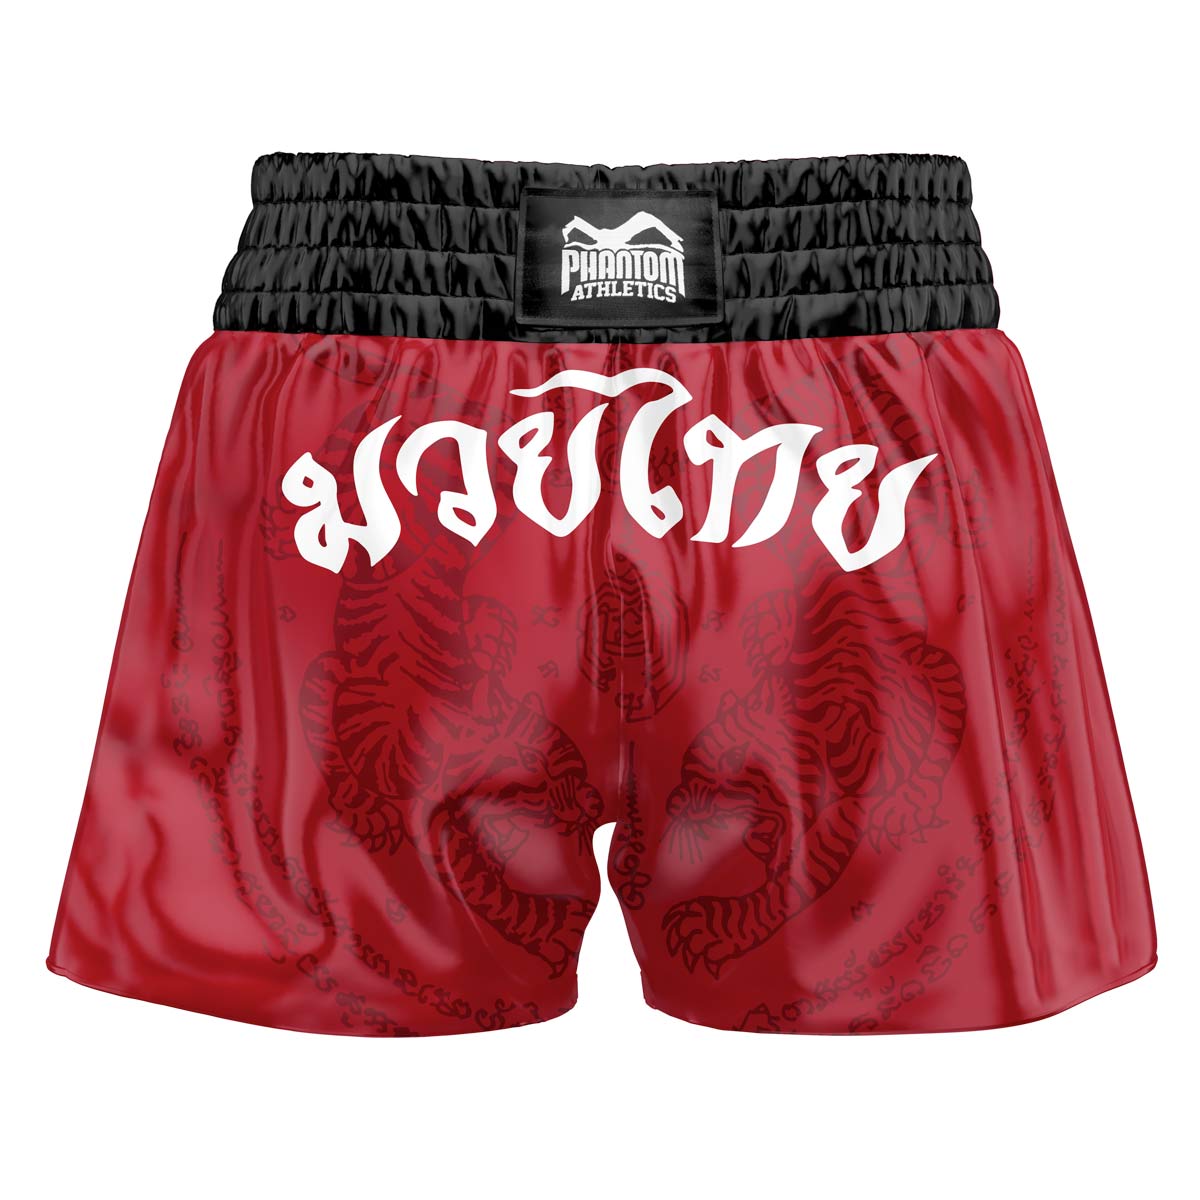 Die Phantom Muay Thai Shorts SAK YANT in rot. Oldschool Satin Stoff mit traditionellem Tiger Design verleiht dir original Thailand Feeling. In gewohnter Phantom Athletics Qualität. Ideal für dein Thaibox Training und den Wettkampf.